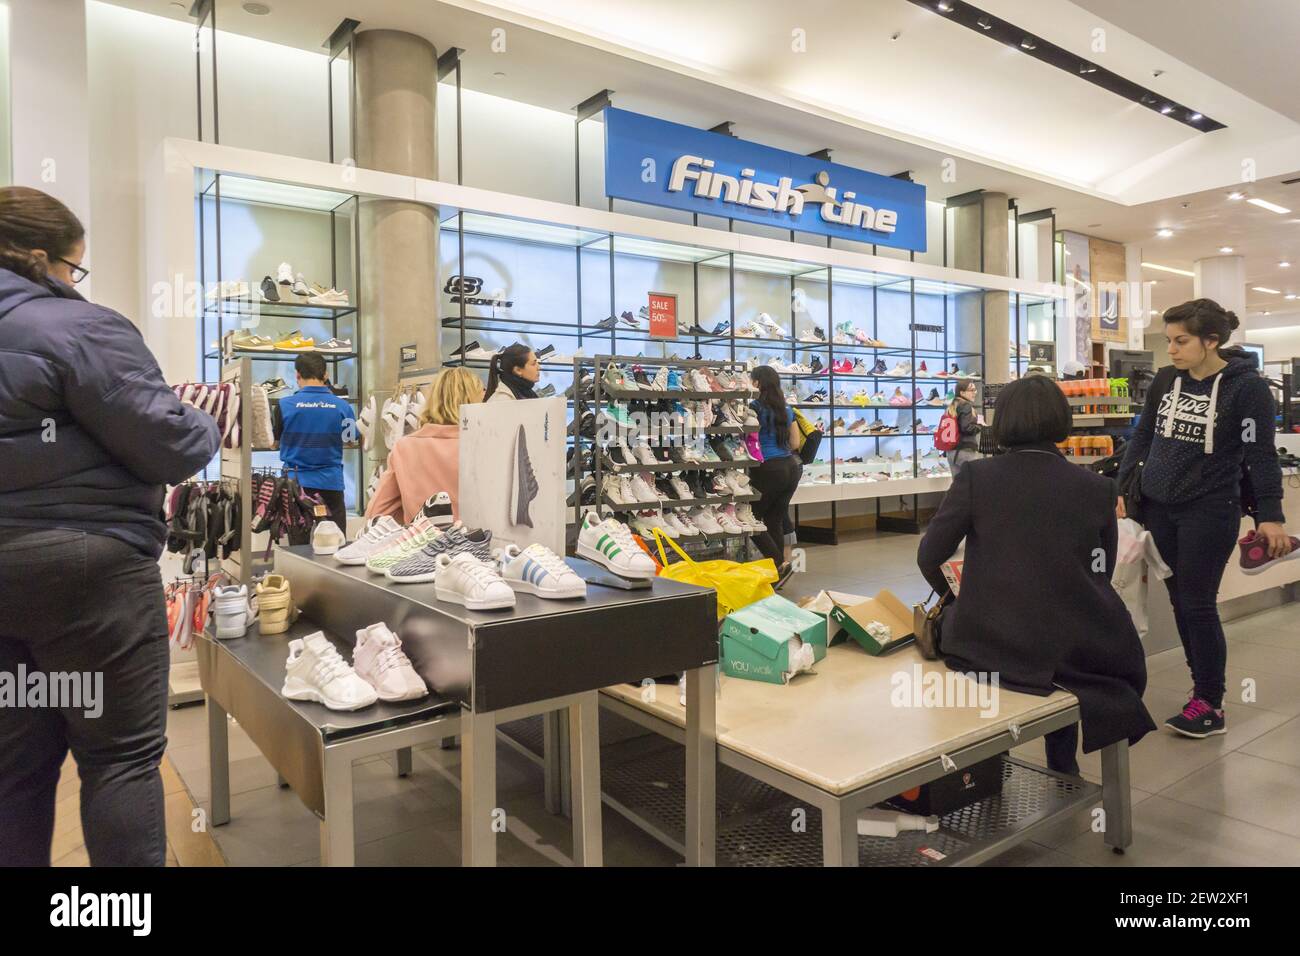 The Finish Line boutique en el departamento de zapatos en la tienda  insignia de Macy's Herald Square en Nueva York el lunes 8 de mayo de 2017.  El minorista de calzado deportivo